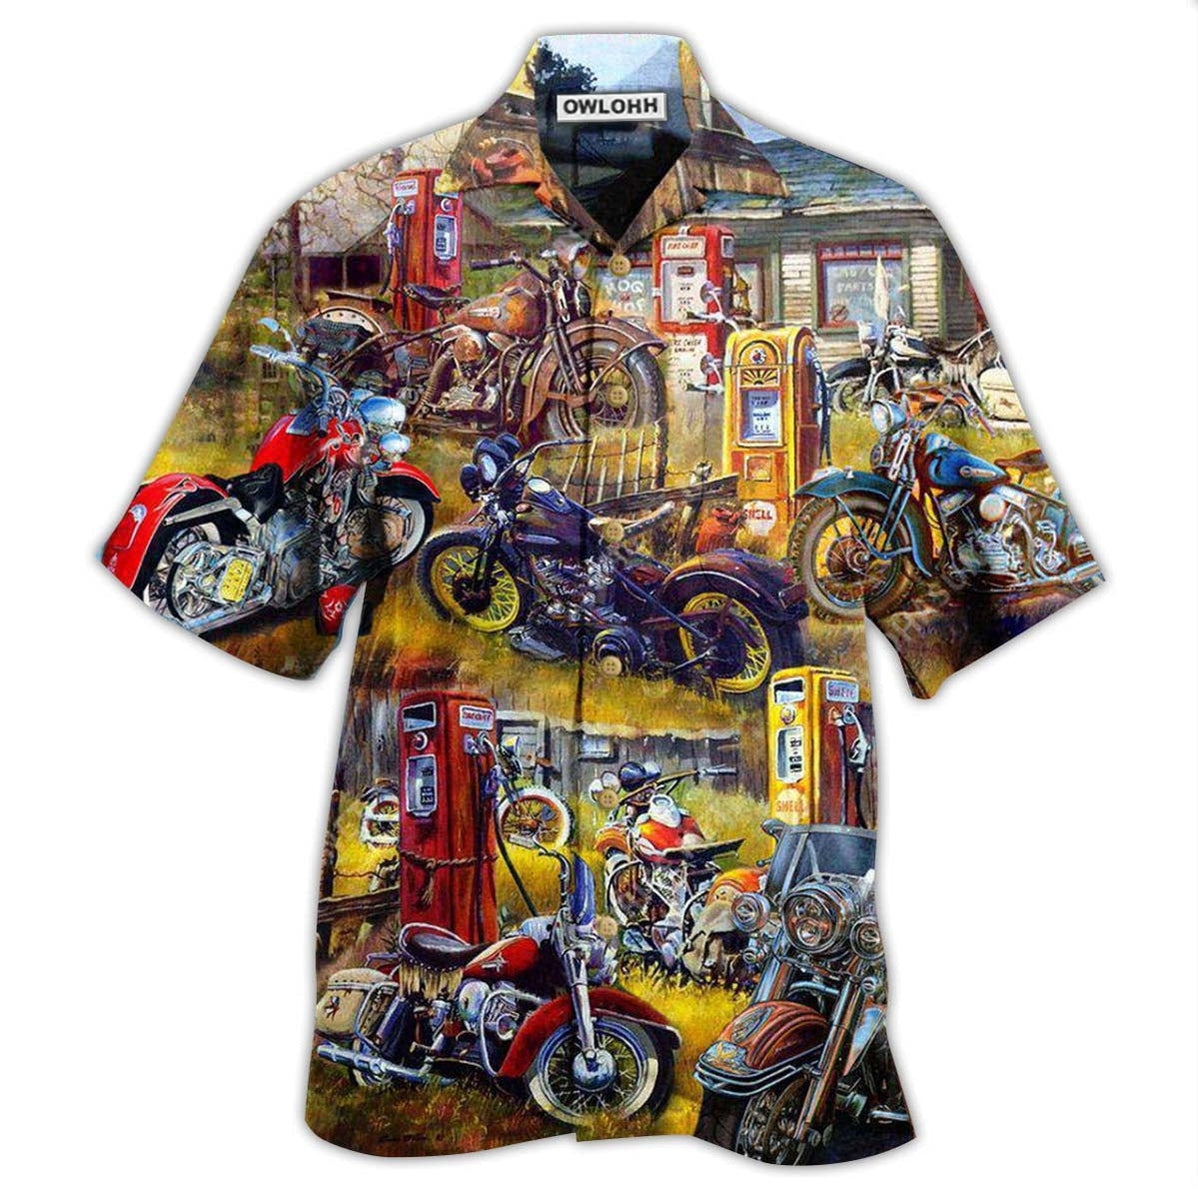 Hawaiian Shirt / Adults / S Motorcycle In The Field In The Sunset - Hawaiian Shirt - Owls Matrix LTD